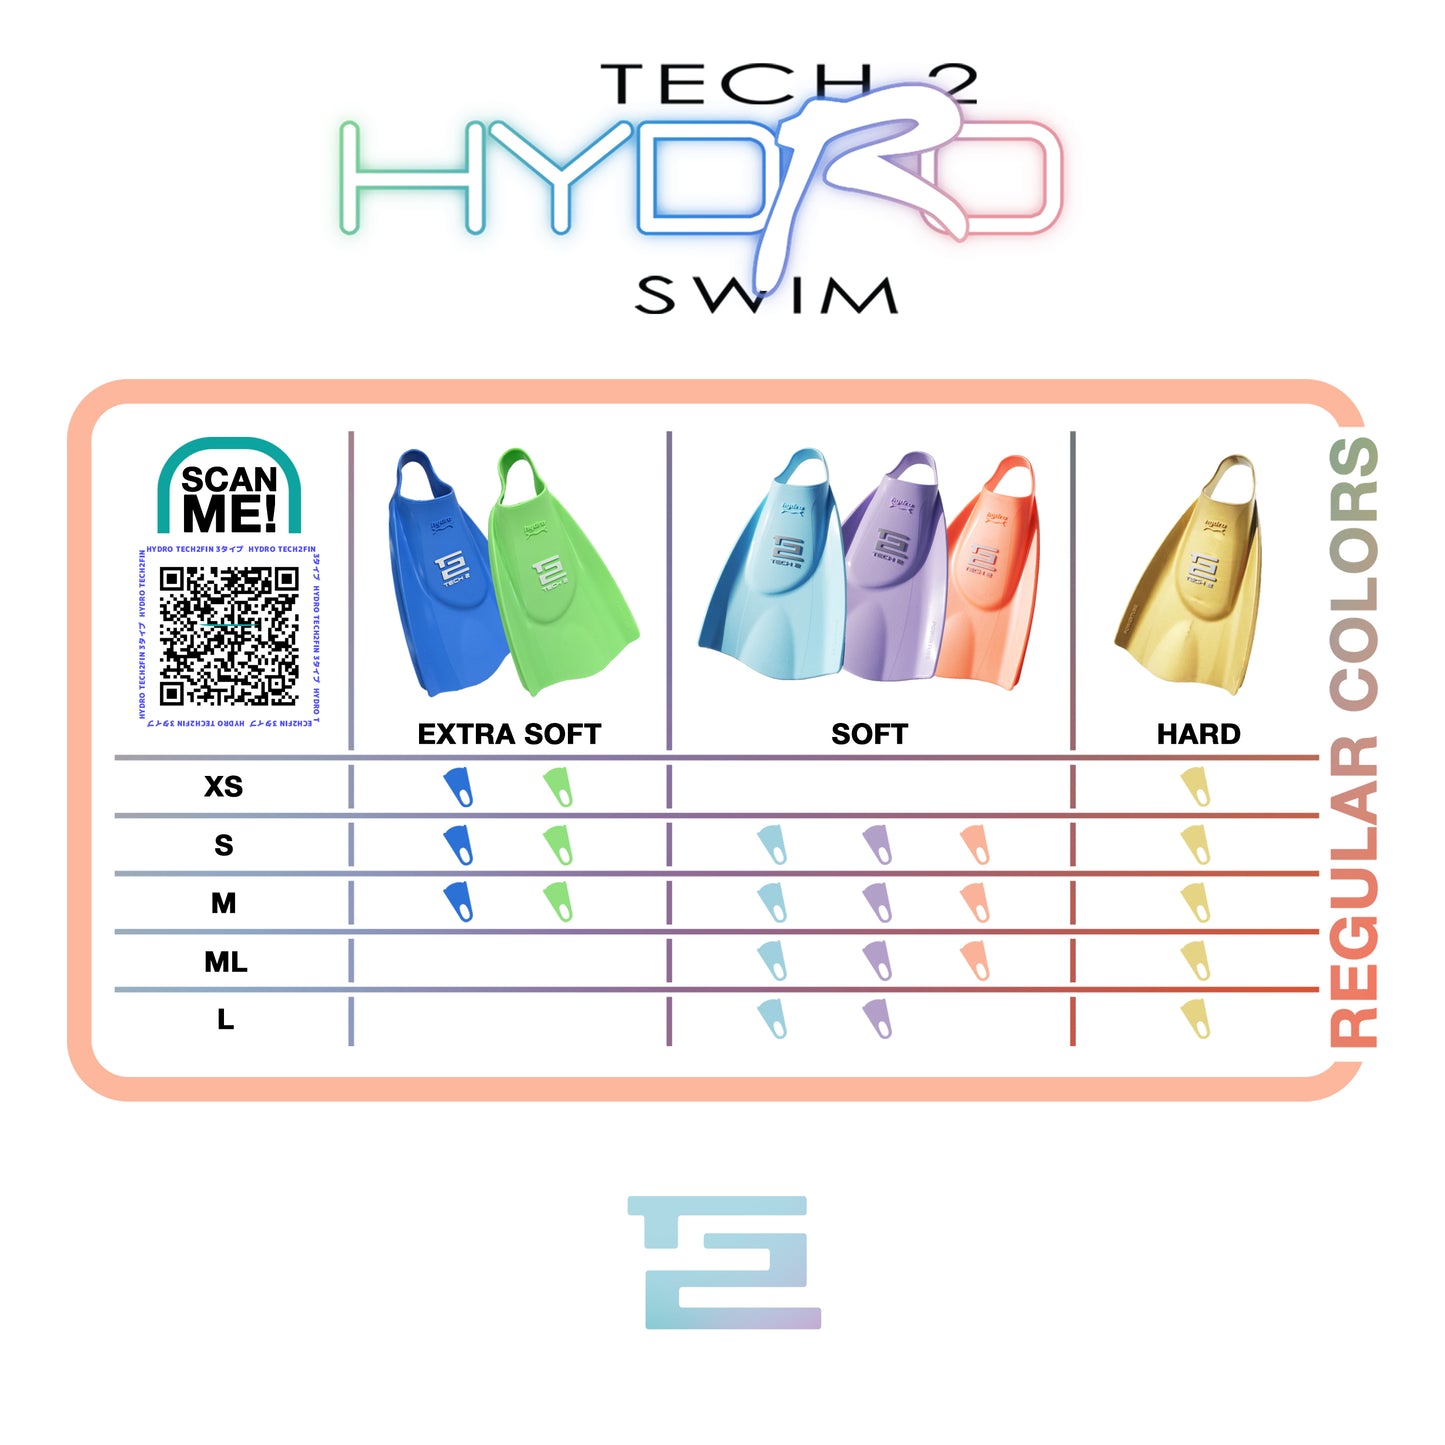 ハイドロテック２フィン（エクストラソフト) Hydro Tech2Fin Swim (EXTRA SOFT Type)